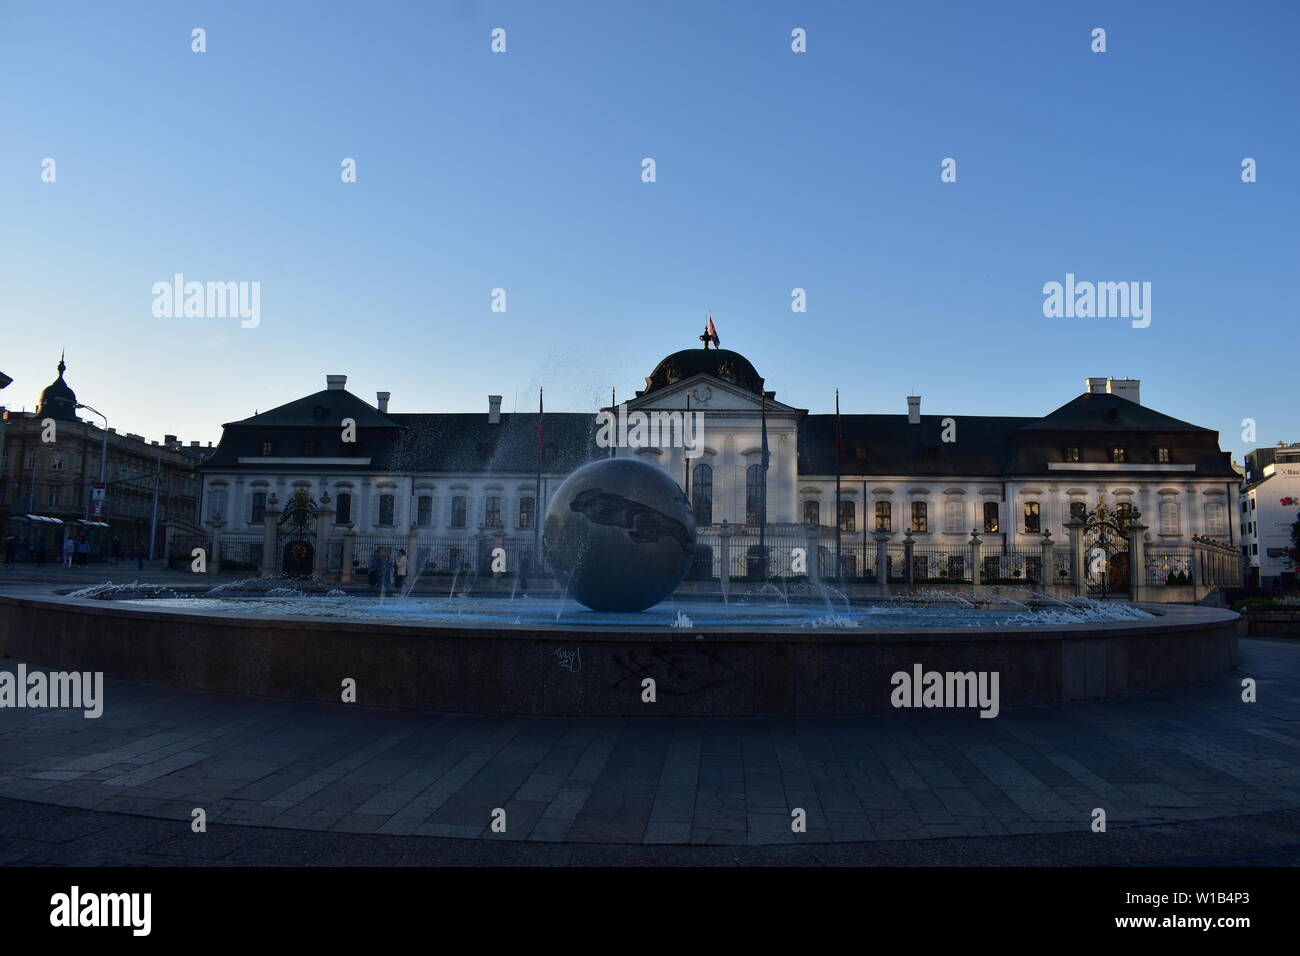 En fin de soirée de la Terre fontaine et le palais Grassalkovich à Bratislava, Slovaquie Banque D'Images